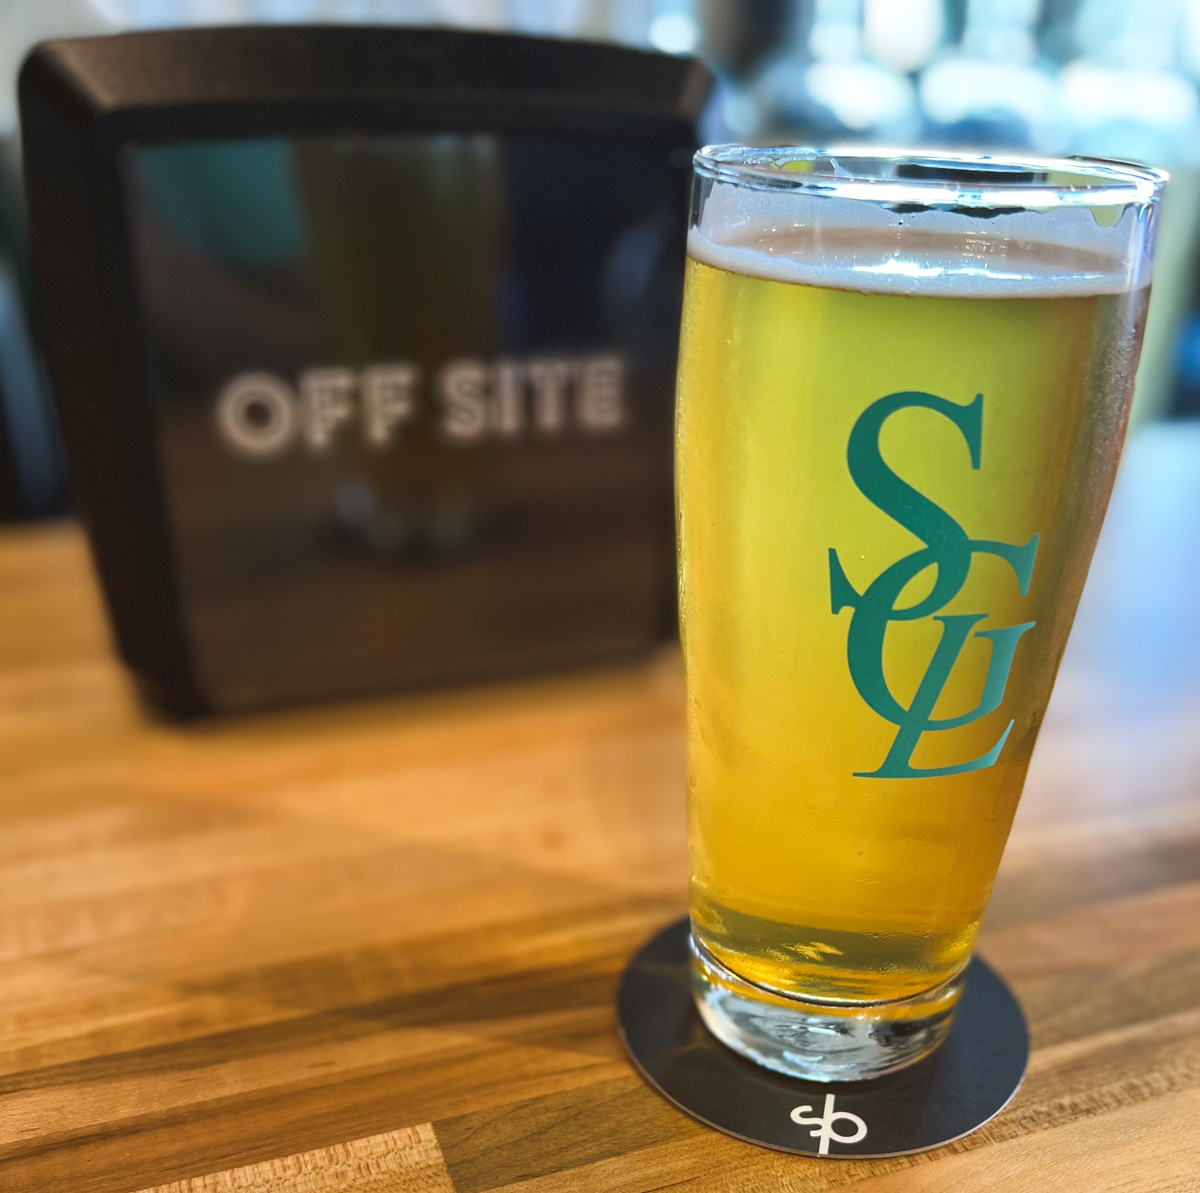 Super Good Lager - OFF SITE Miami Nano Brewery | ViewFromALove